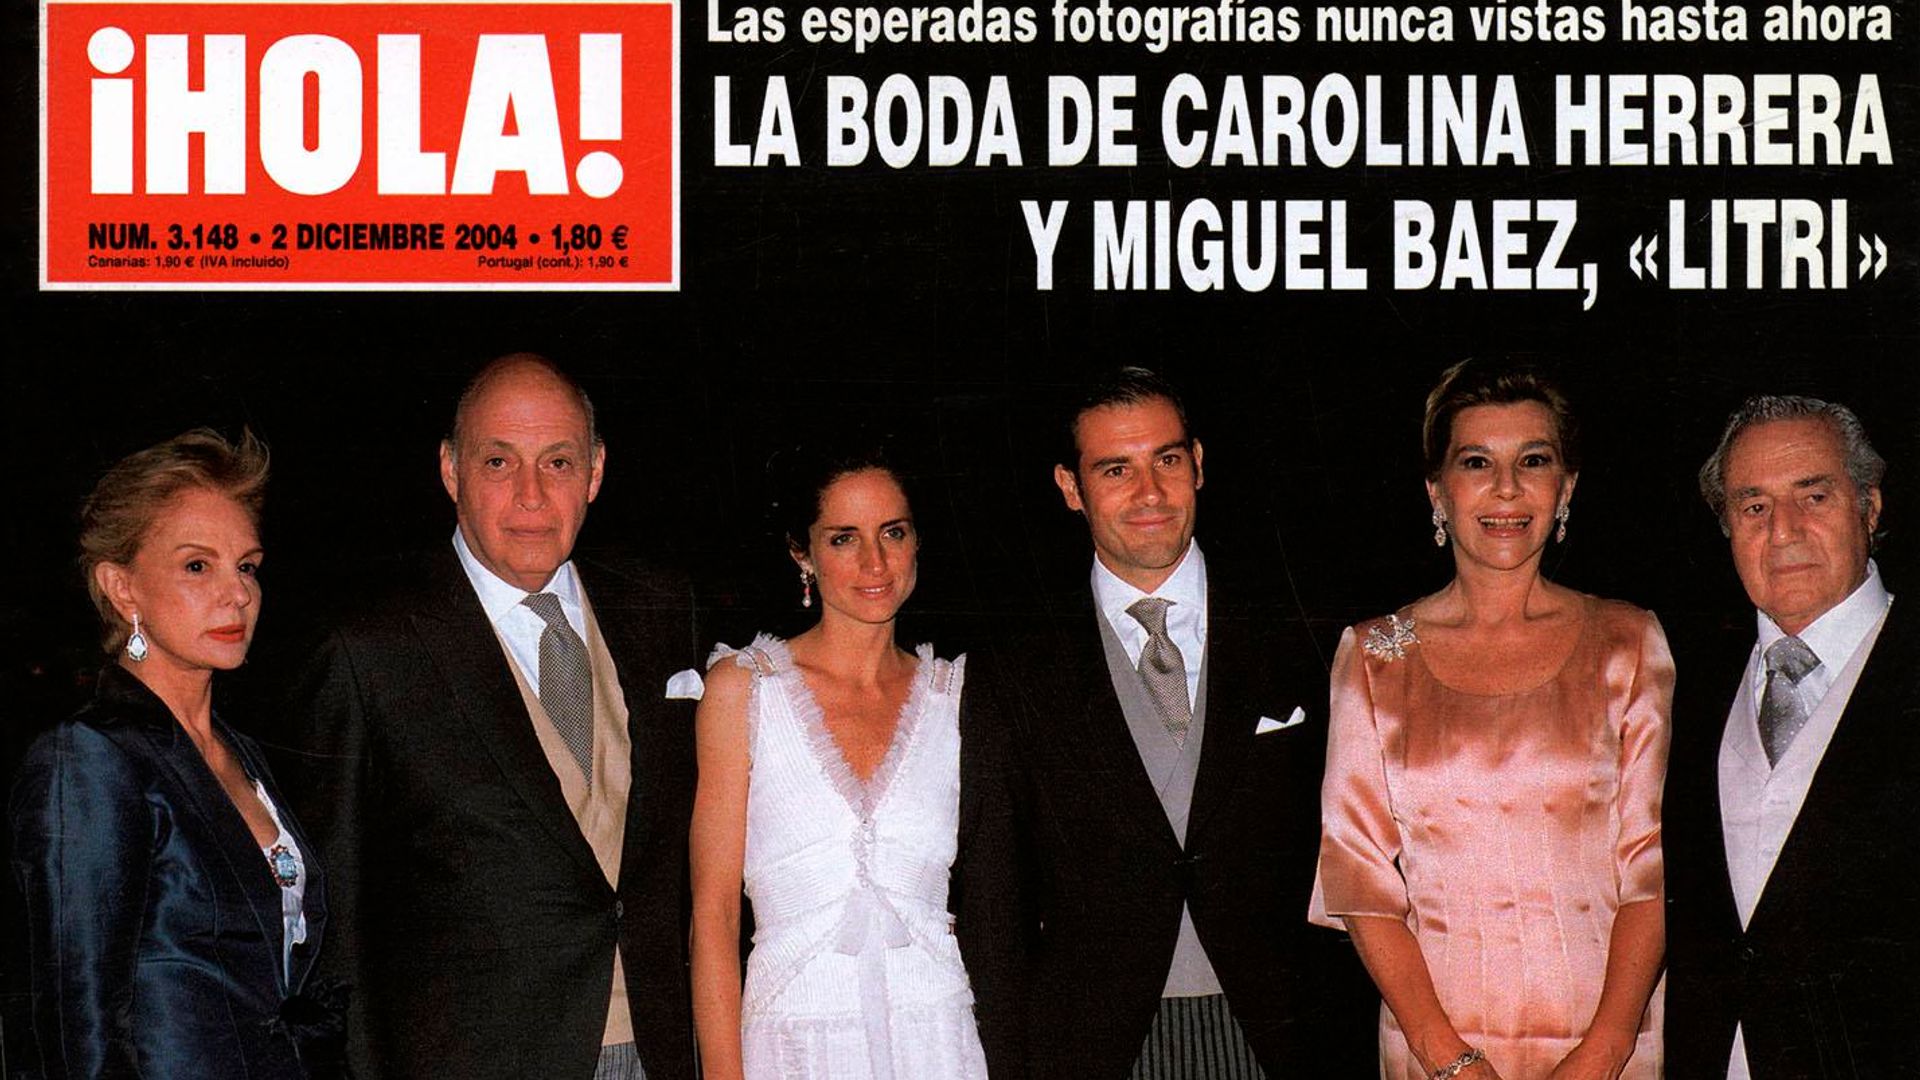 Miguel Báez ‘El Litri’ y Casilda Ybarra, entre rumores de boda. Así fue el enlace del torero con Carolina Herrera: fiesta flamenca hasta la madrugada